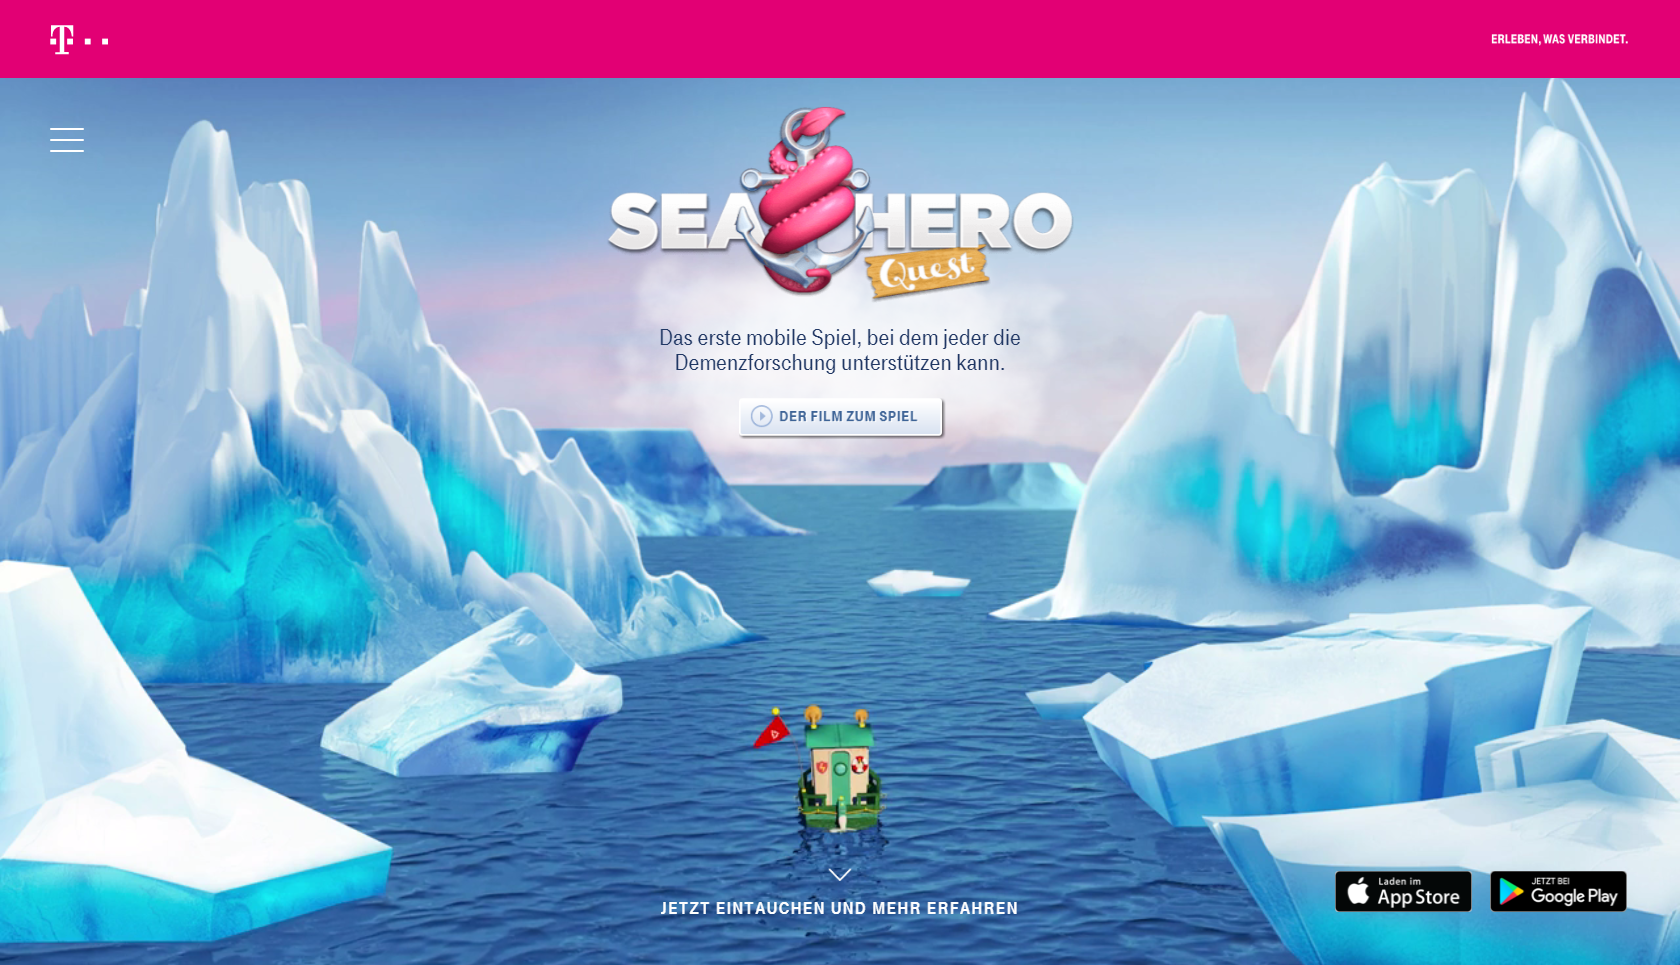 Sea Hero Quest – Helfen Sie spielend der Demenzforschung